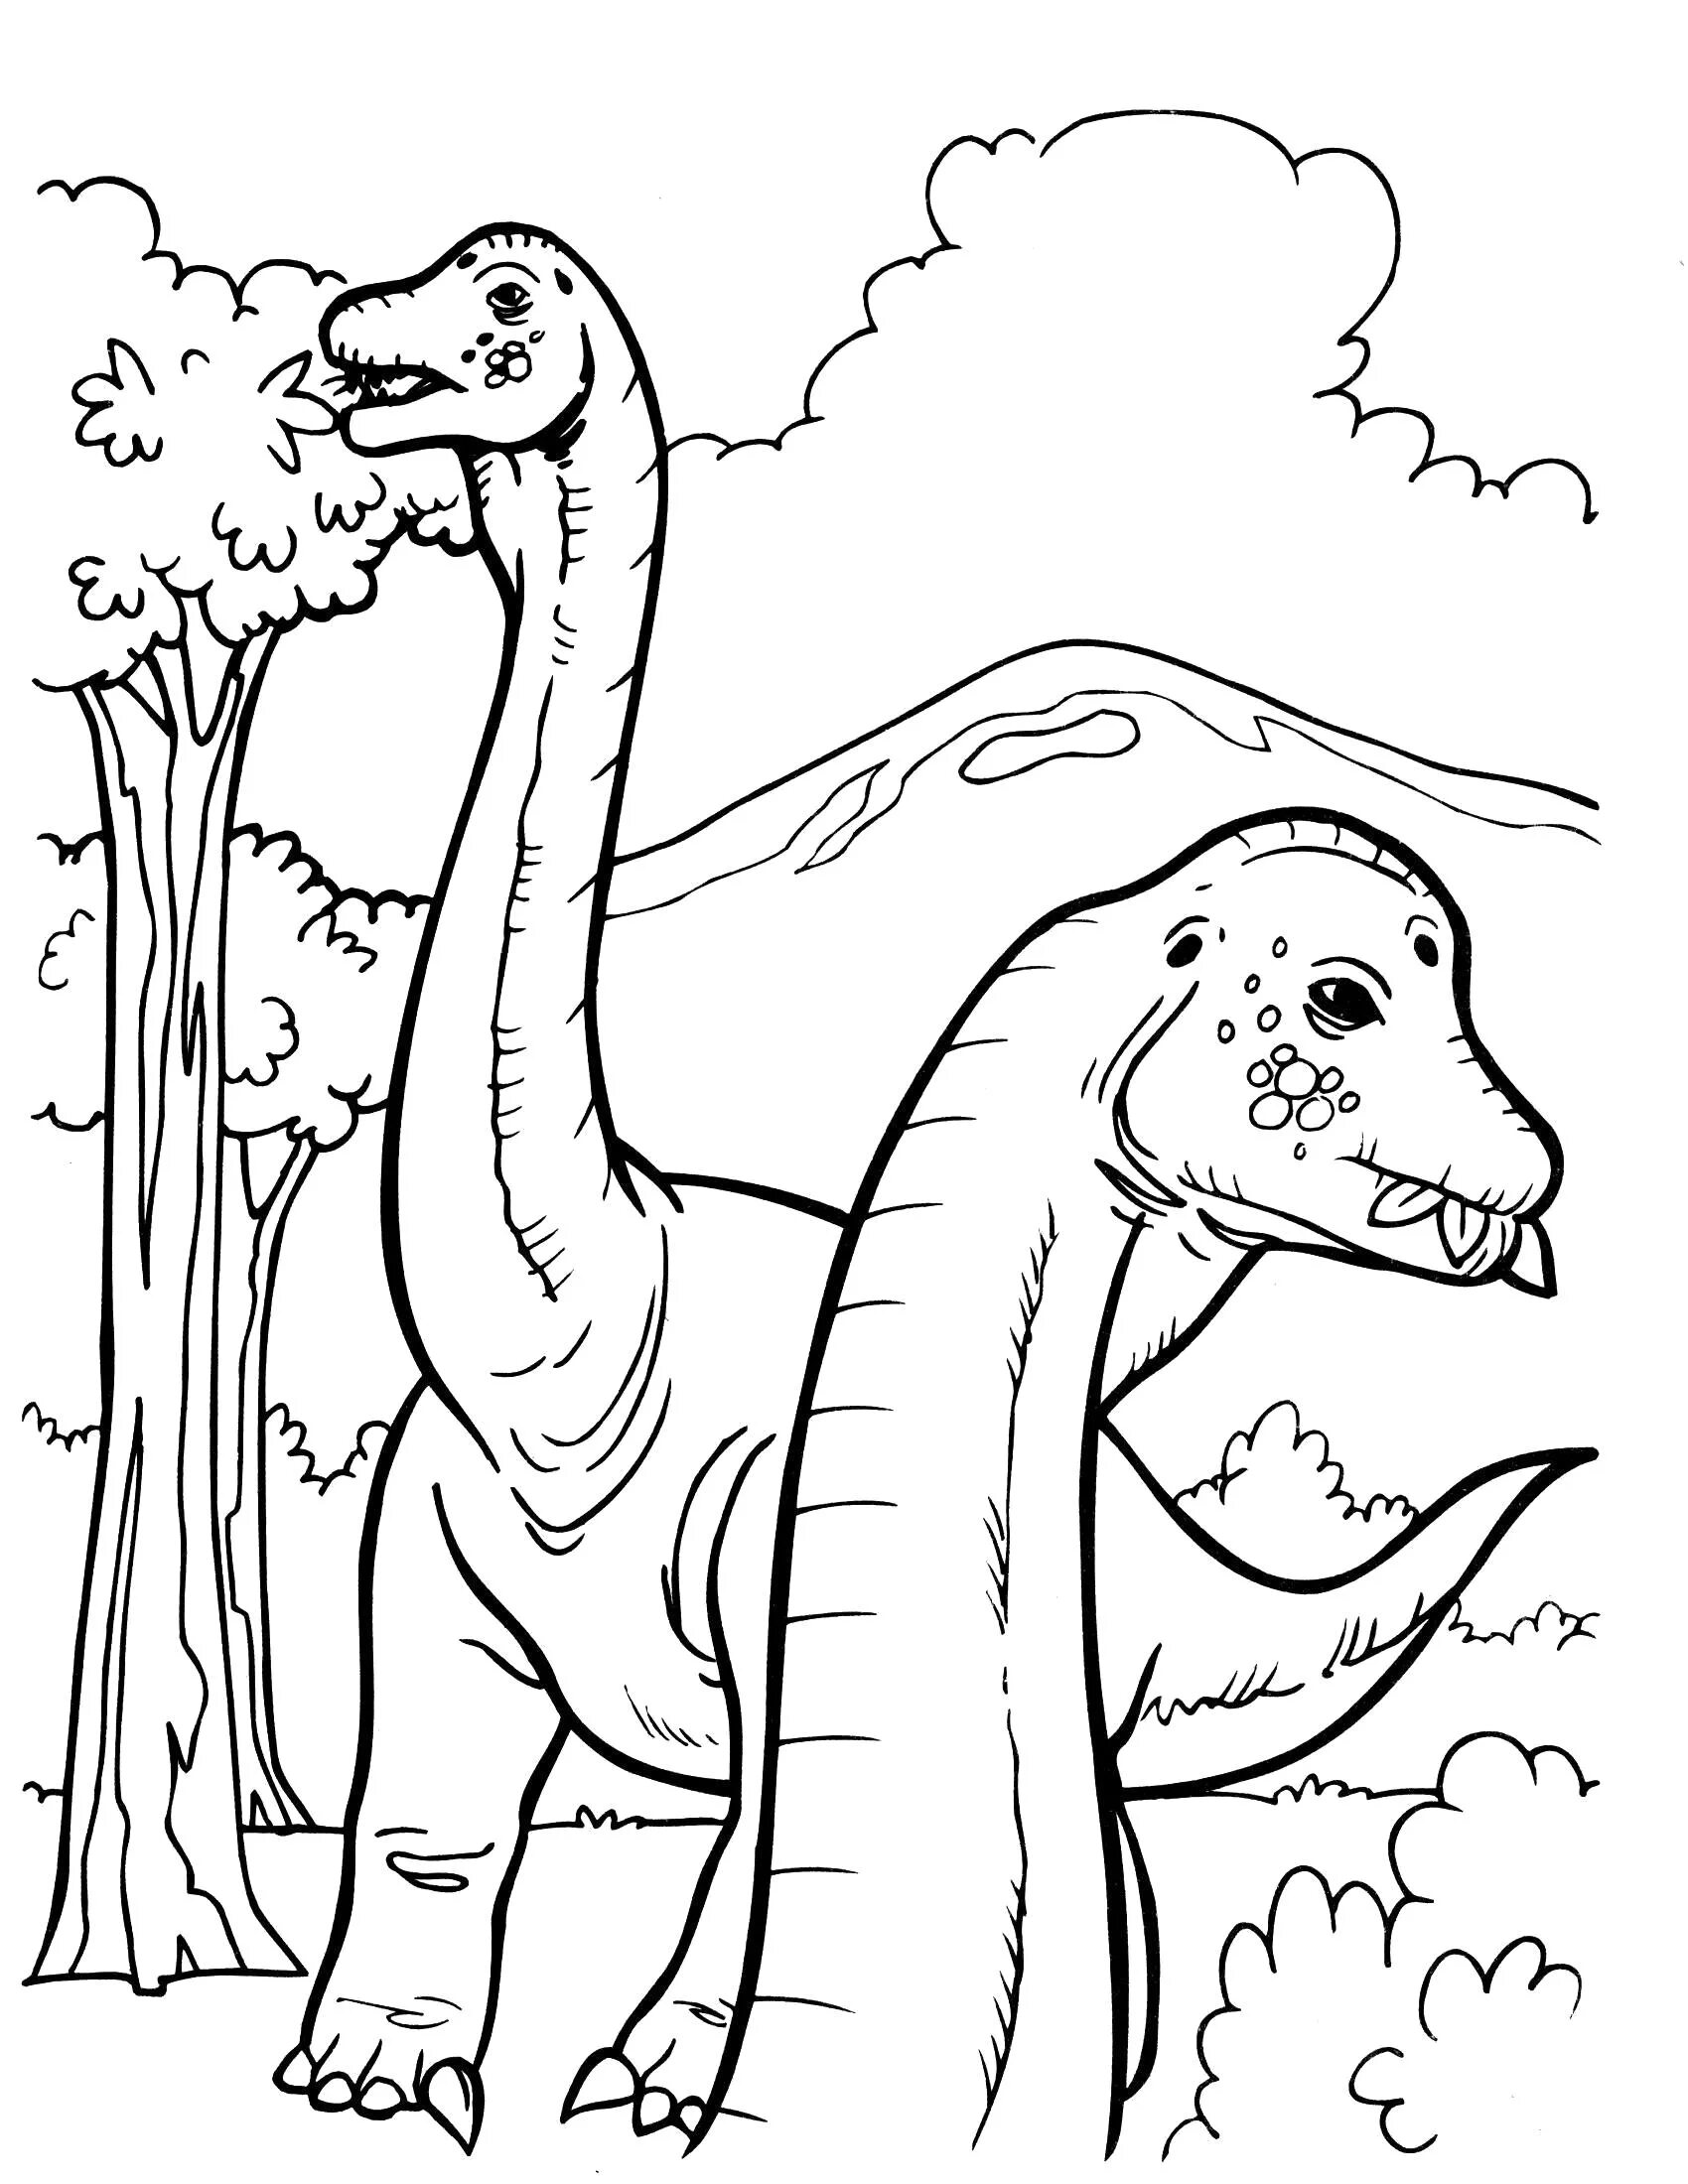 Раскраска динозавр формат а4. Динозавры / раскраска. Динозавр раскраска для детей. Раскраска "Динозаврики". Раскраски для мальчиков динозавры.